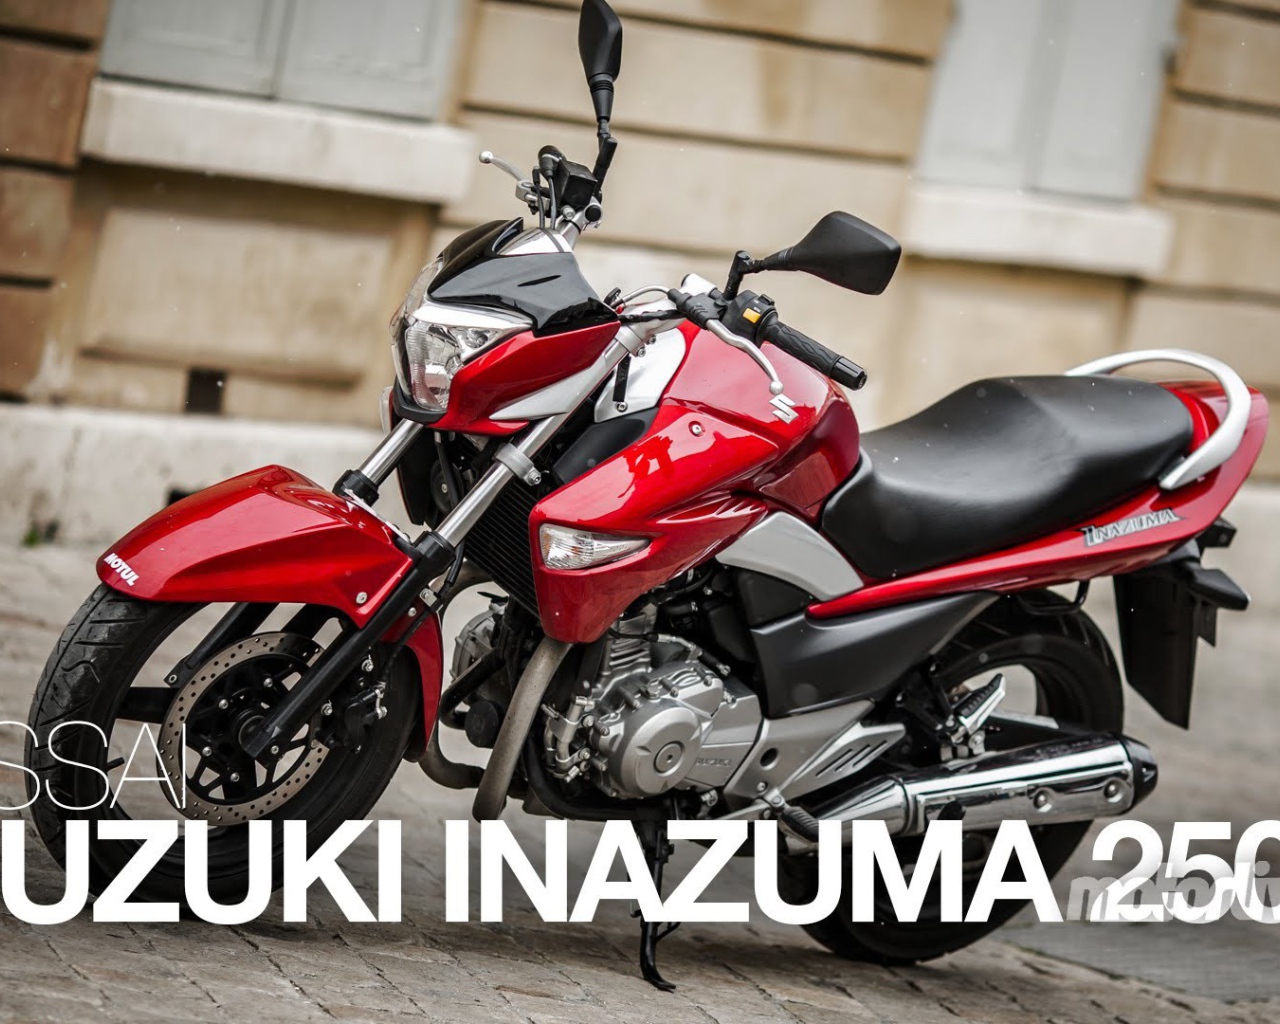 Мотоцикл Suzuki модели   Inazuma